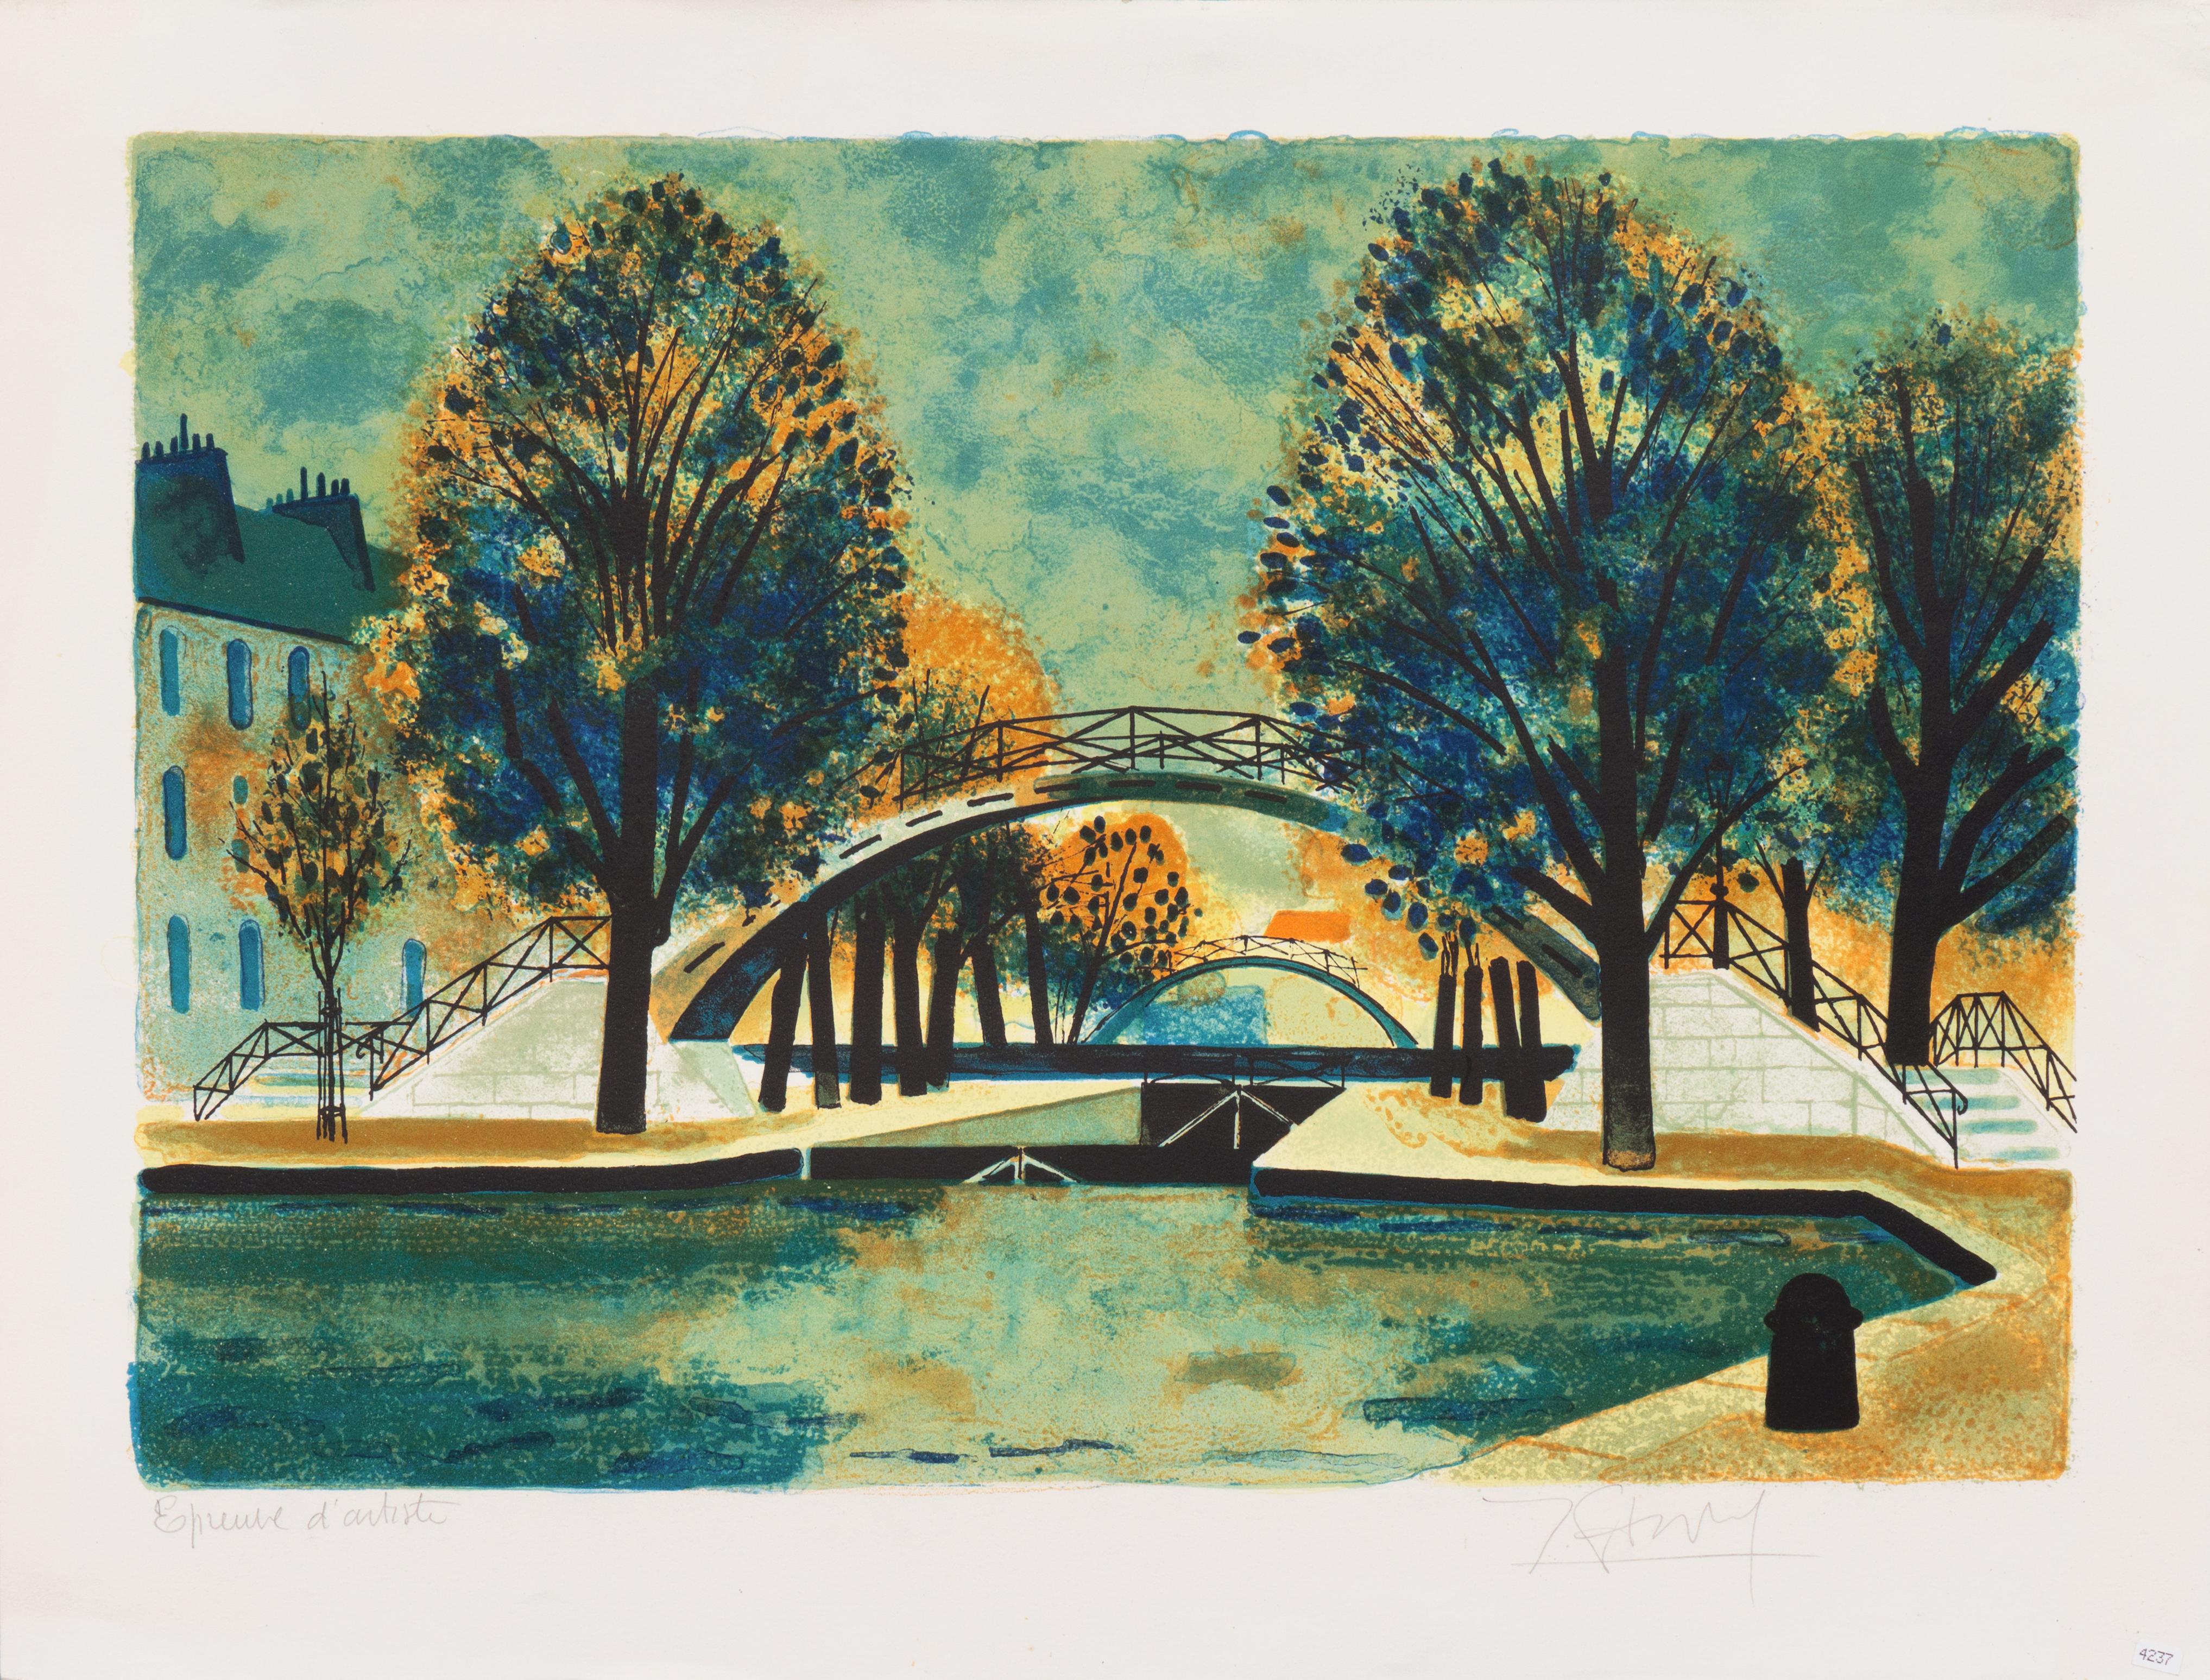 Canal Saint-Martin, École de Paris, MoMA, paysage post-impressionniste - Print de Yves Ganne